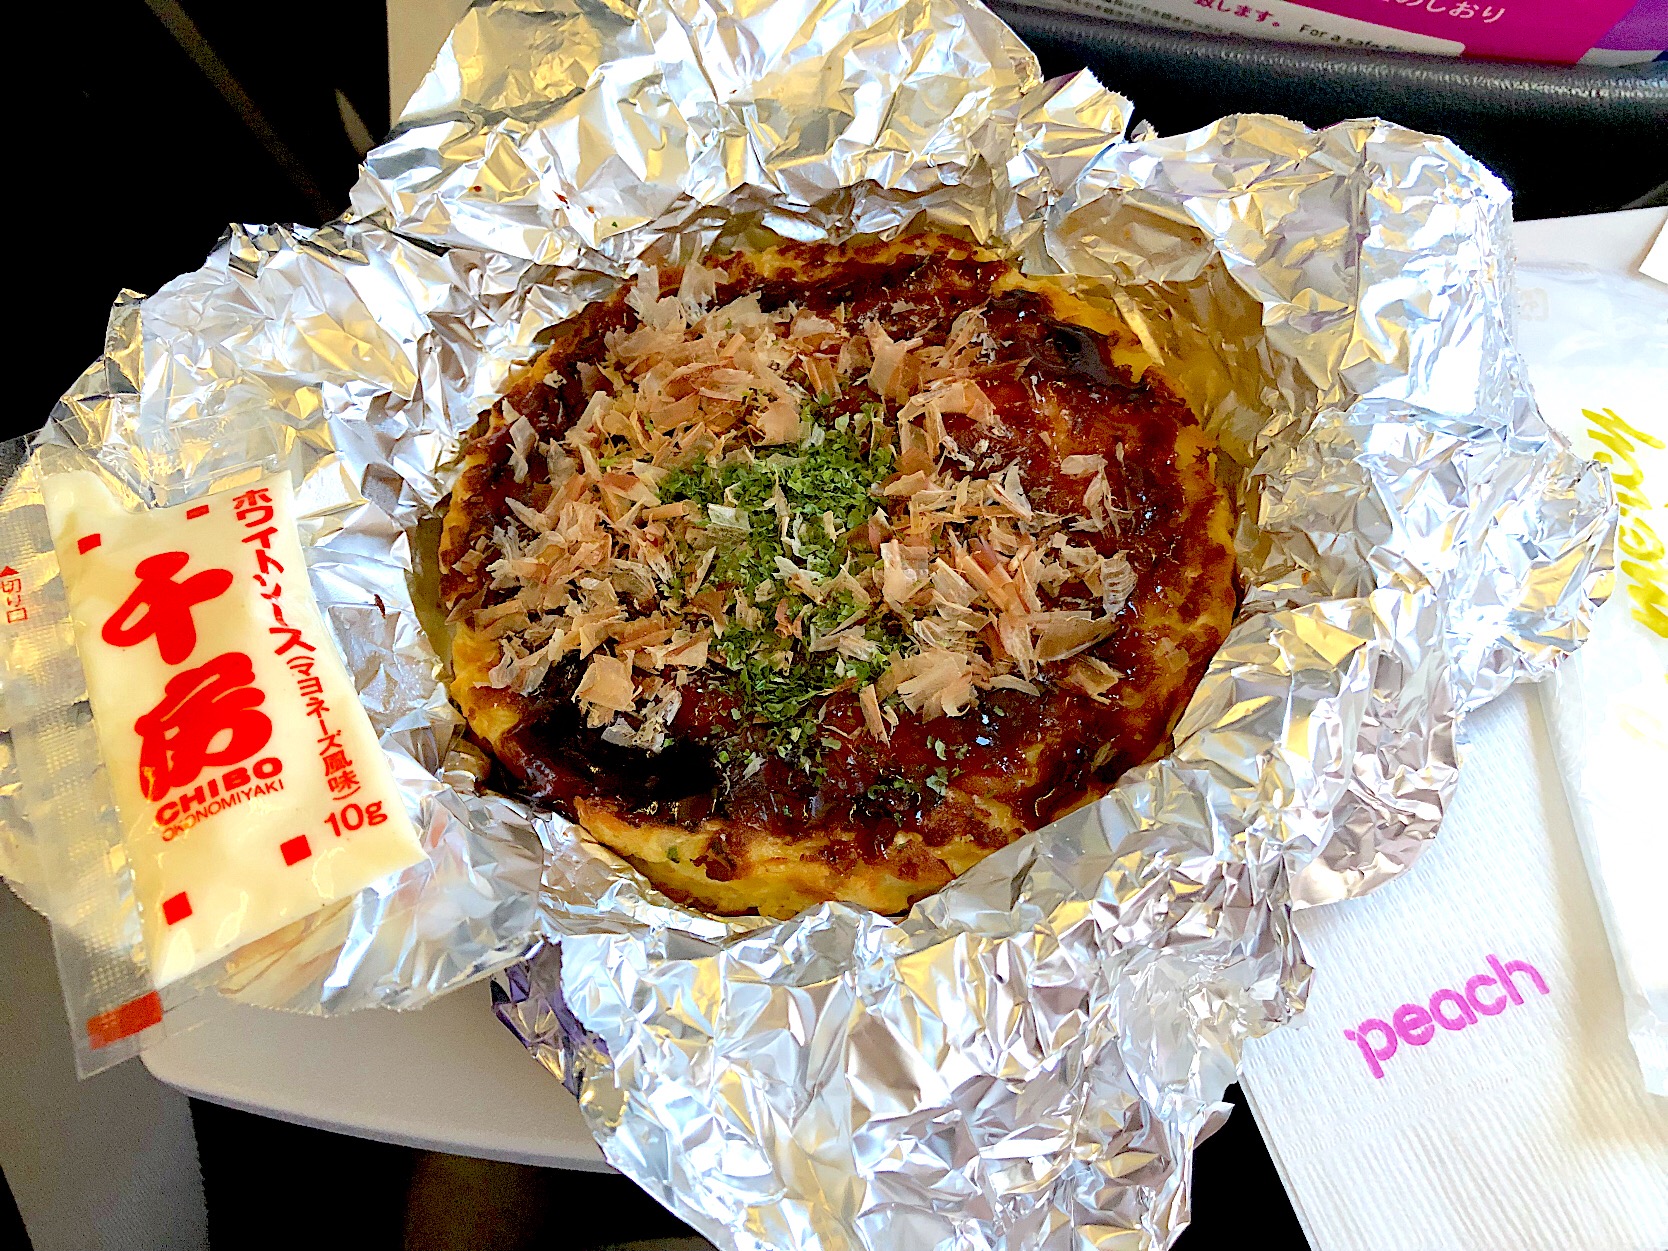 千房大阪燒 
機上餐
不過還是現做的比較好吃